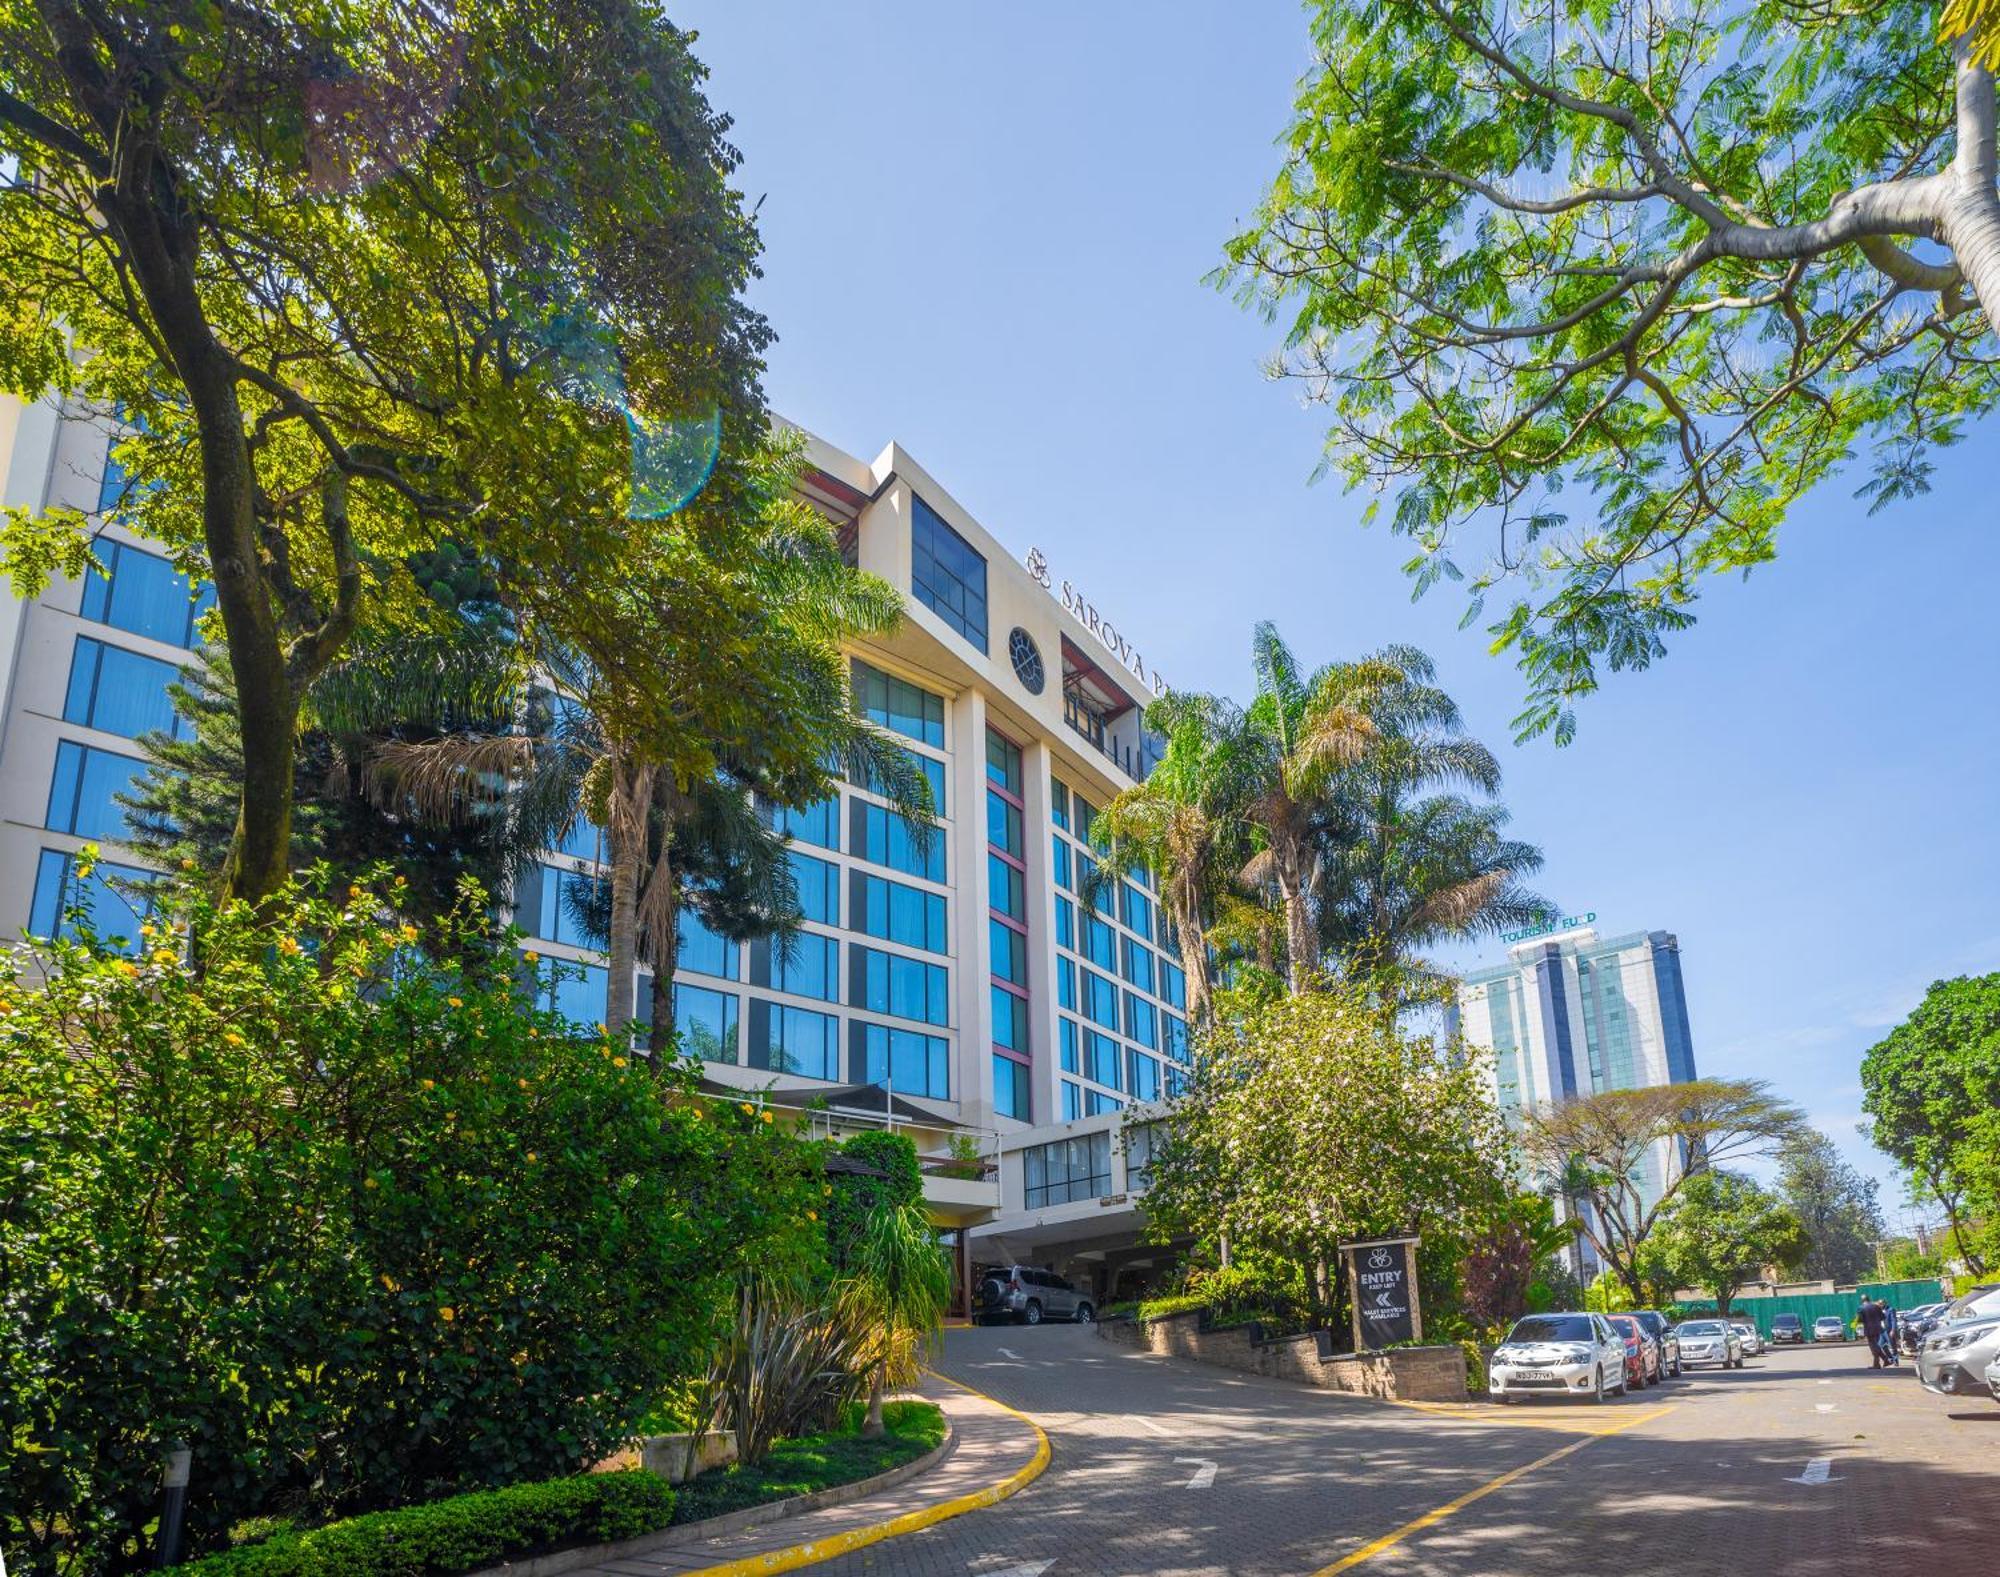 Sarova Panafric Hotel Nairobi Exterior photo